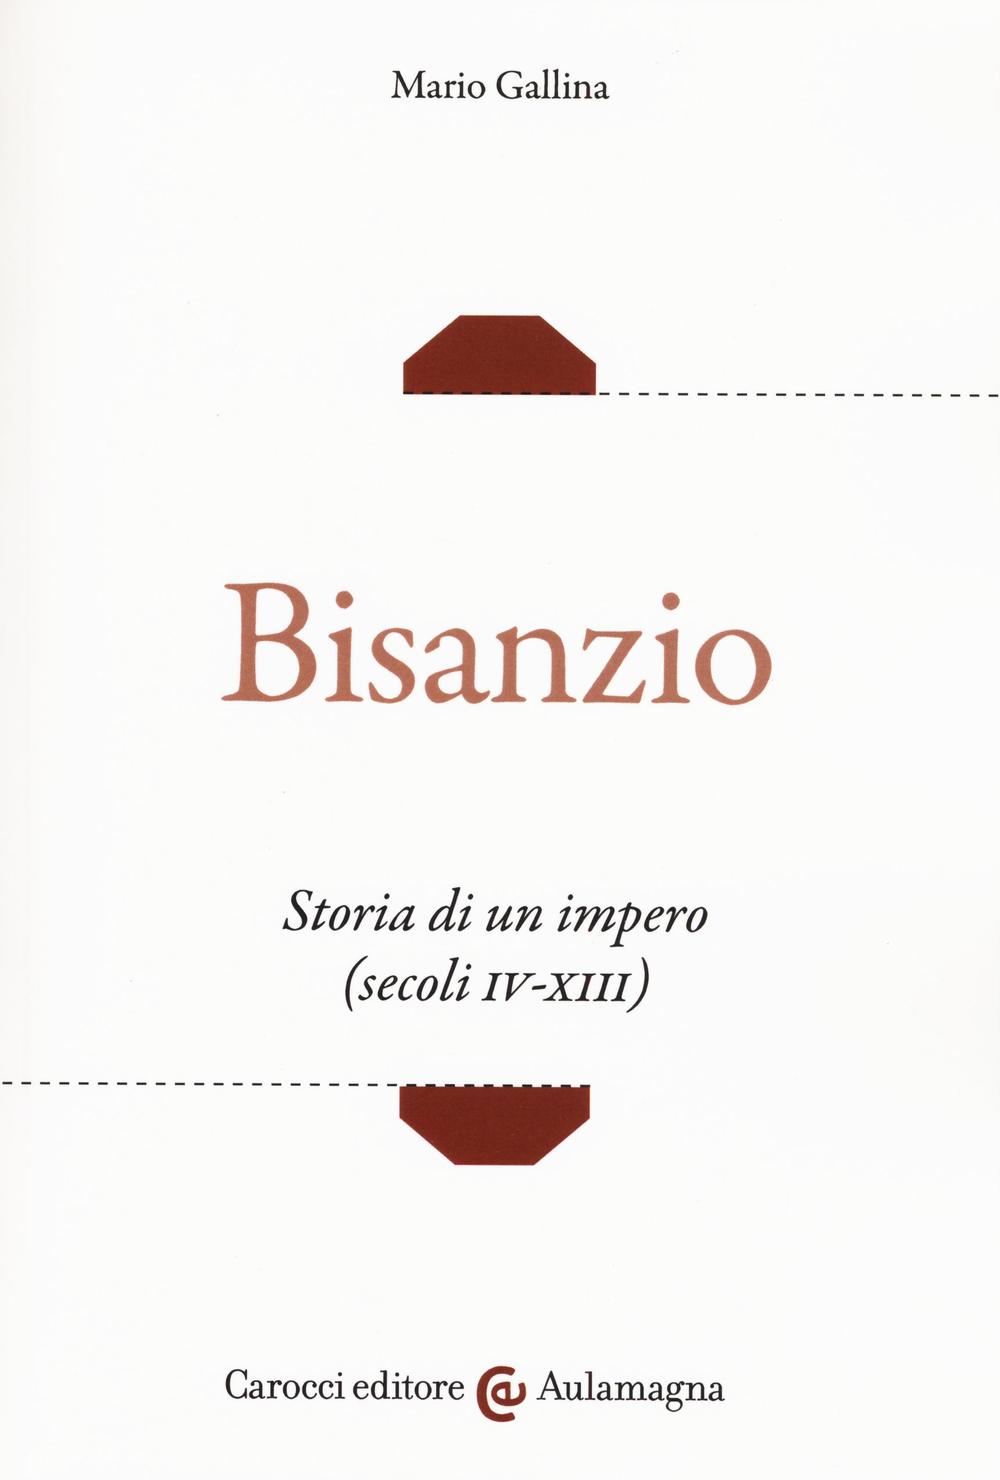 Kniha Bisanzio. Storia di un impero (secoli IV-XIII) Mario Gallina